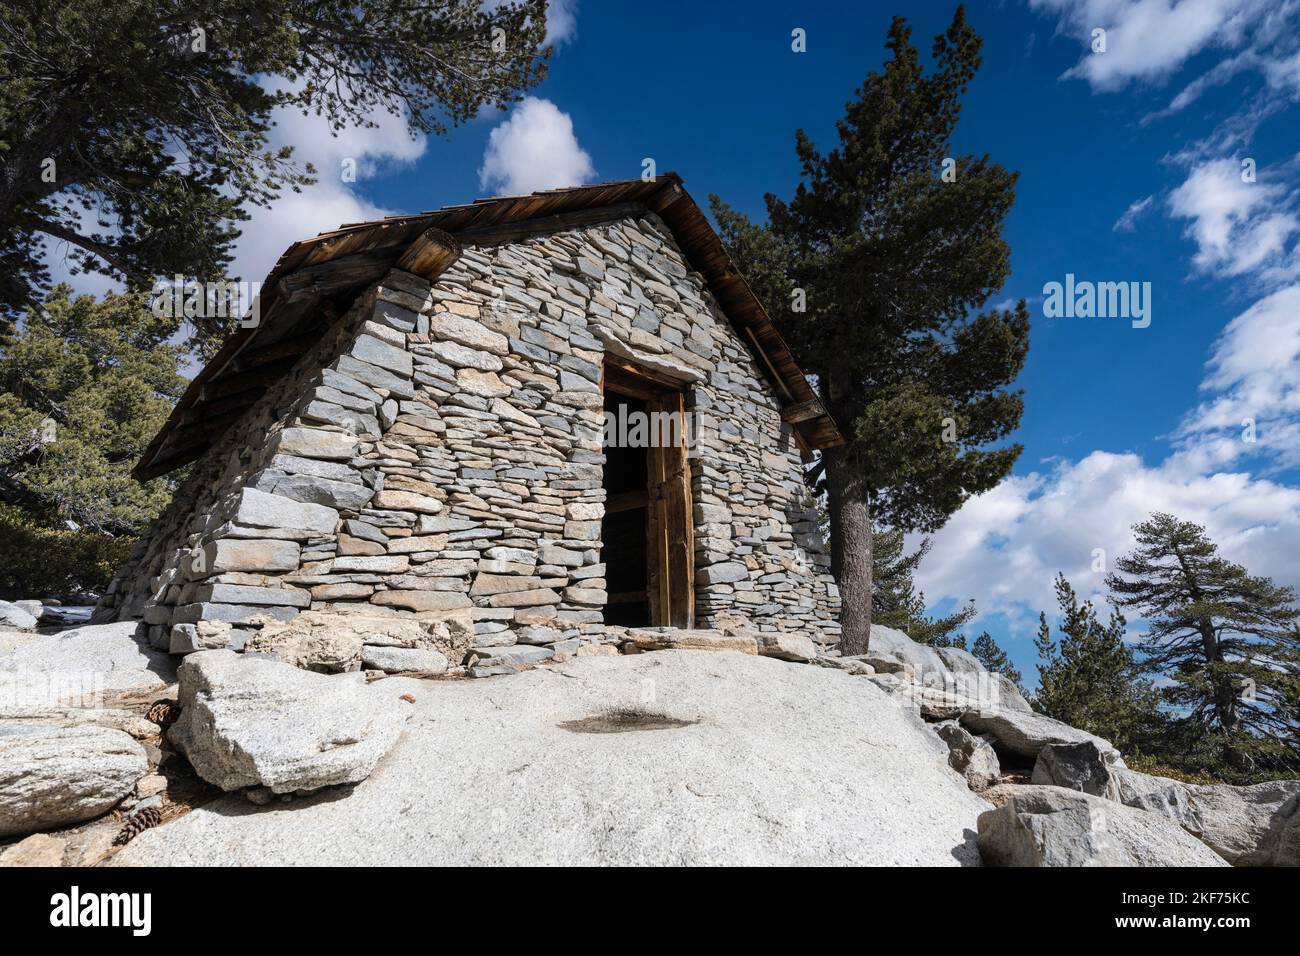 Historische Steinhütte in der Nähe des Gipfels des San Jacinto Peak im San Jacinto Mountains State Park oberhalb von Palm Springs, Kalifornien. Stockfoto